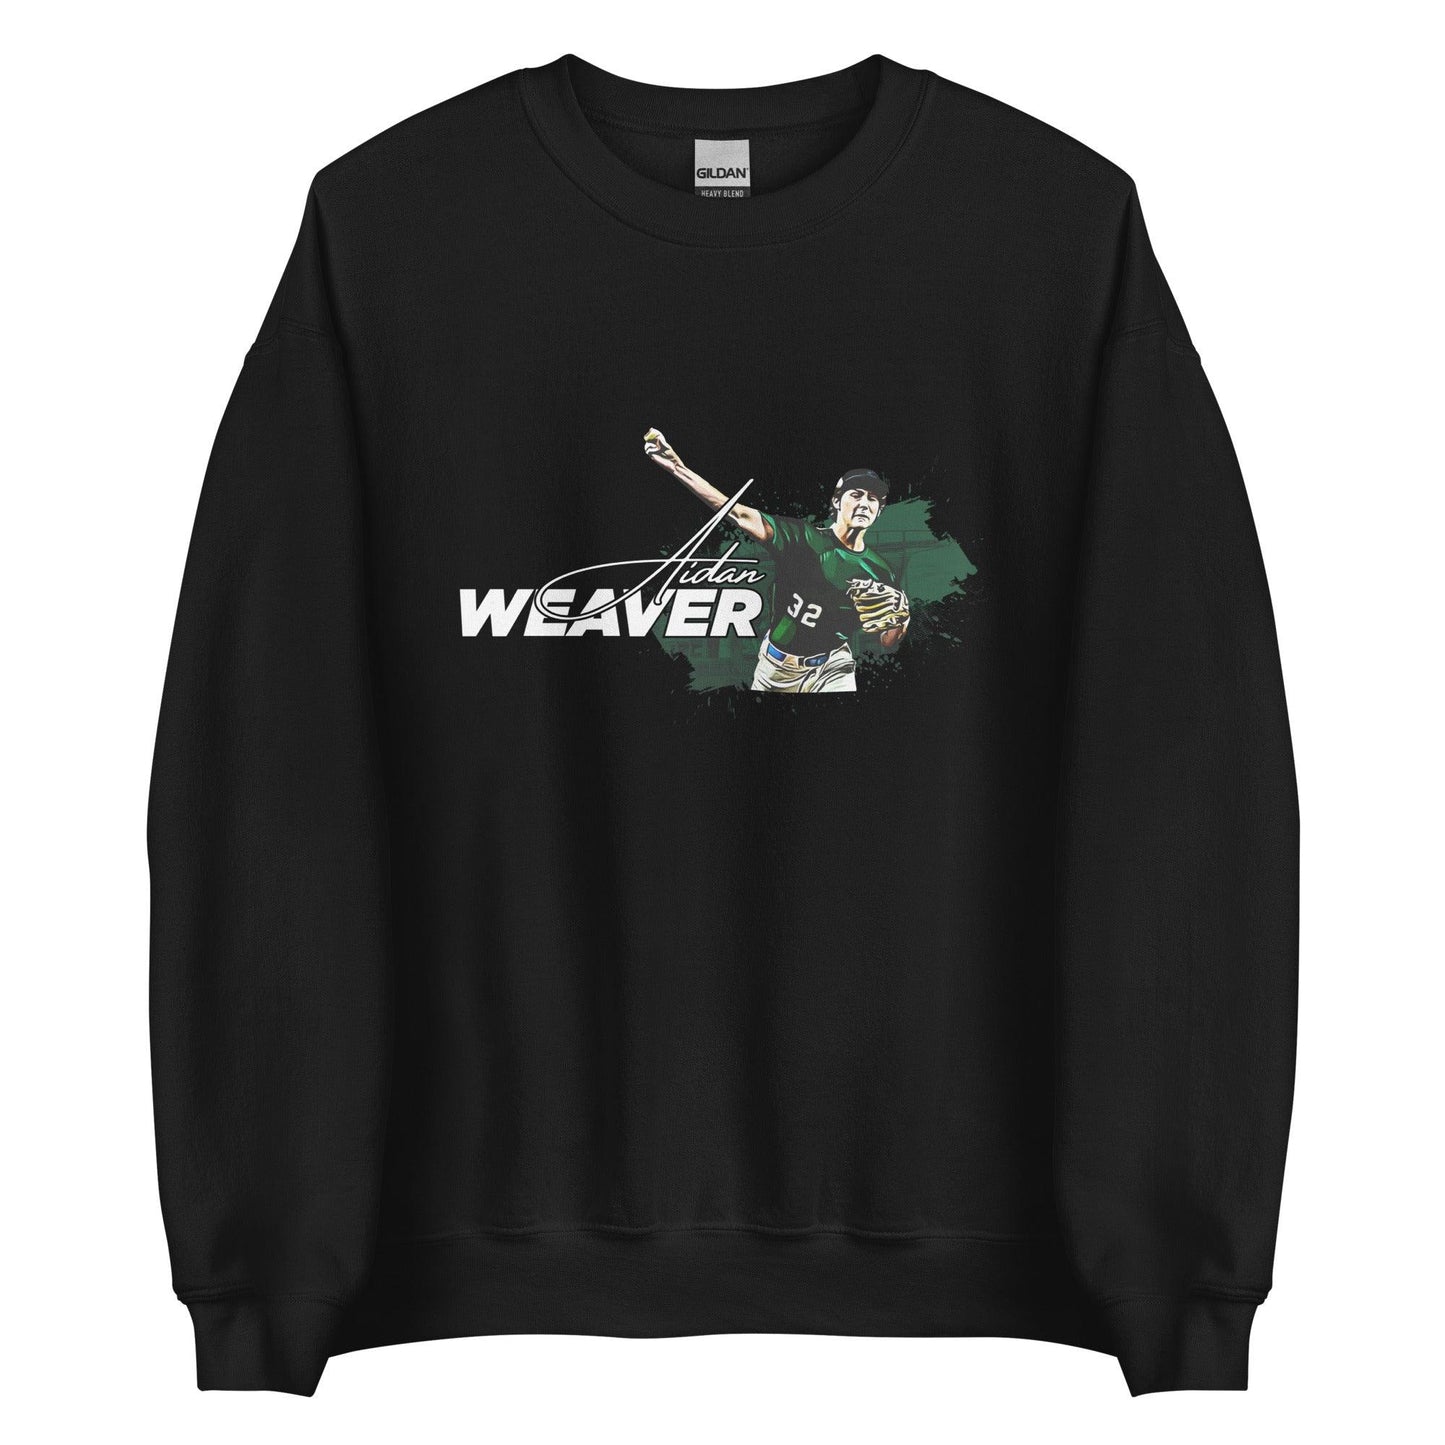 Aidan Weaver “Essential” Sweatshirt - Fan Arch